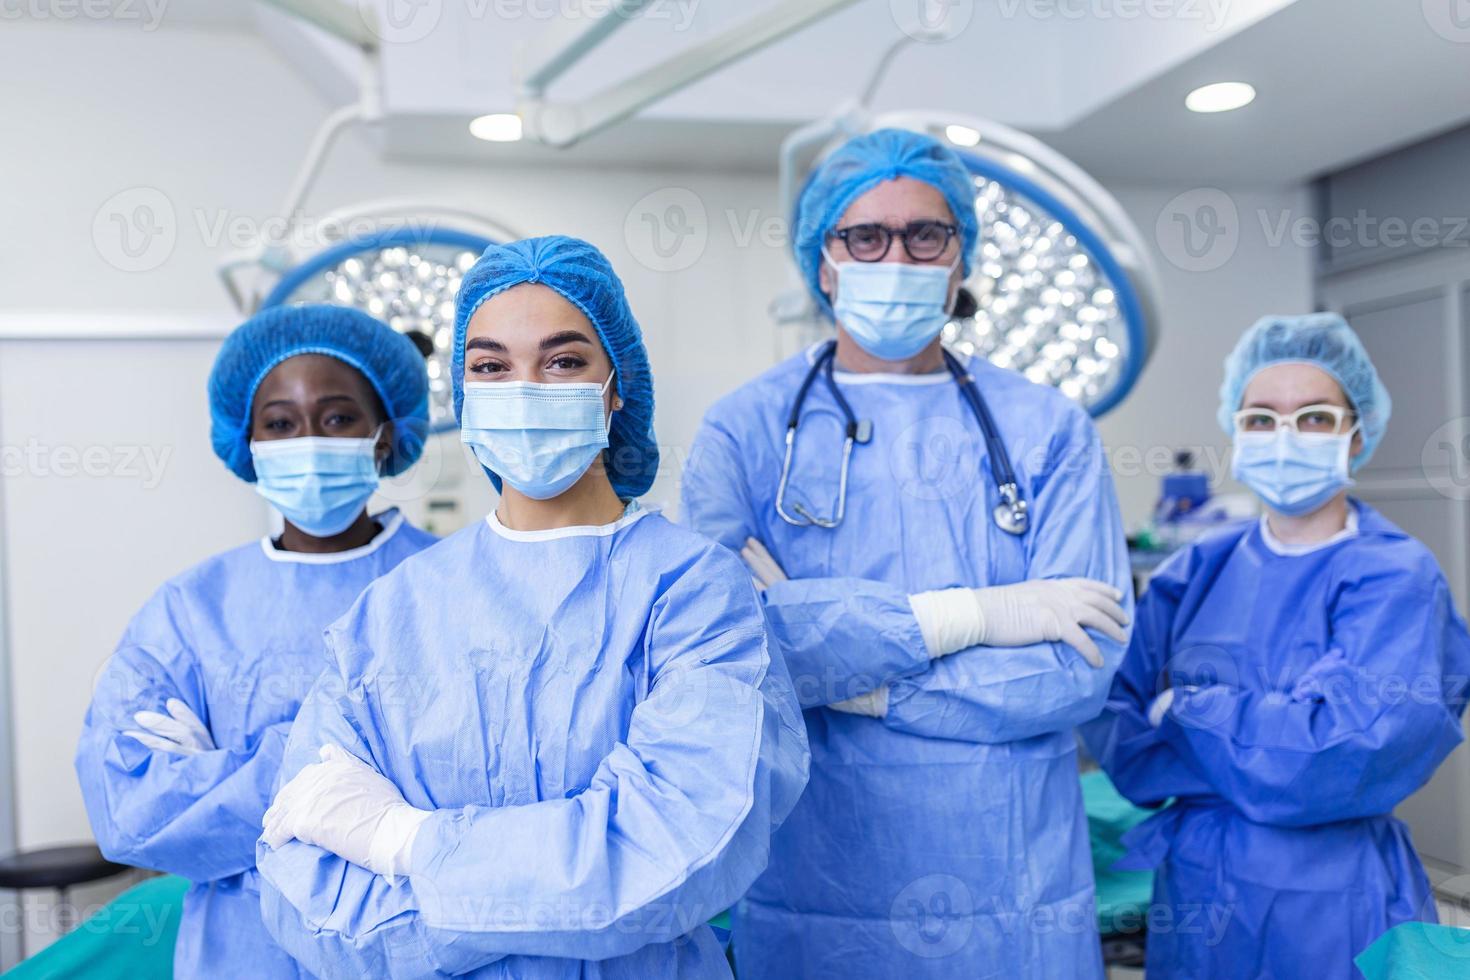 groupe multiethnique de quatre travailleurs de la santé, une équipe de médecins, de chirurgiens et d'infirmières, effectuant une intervention chirurgicale sur un patient dans une salle d'opération d'hôpital. ils regardent la caméra. photo